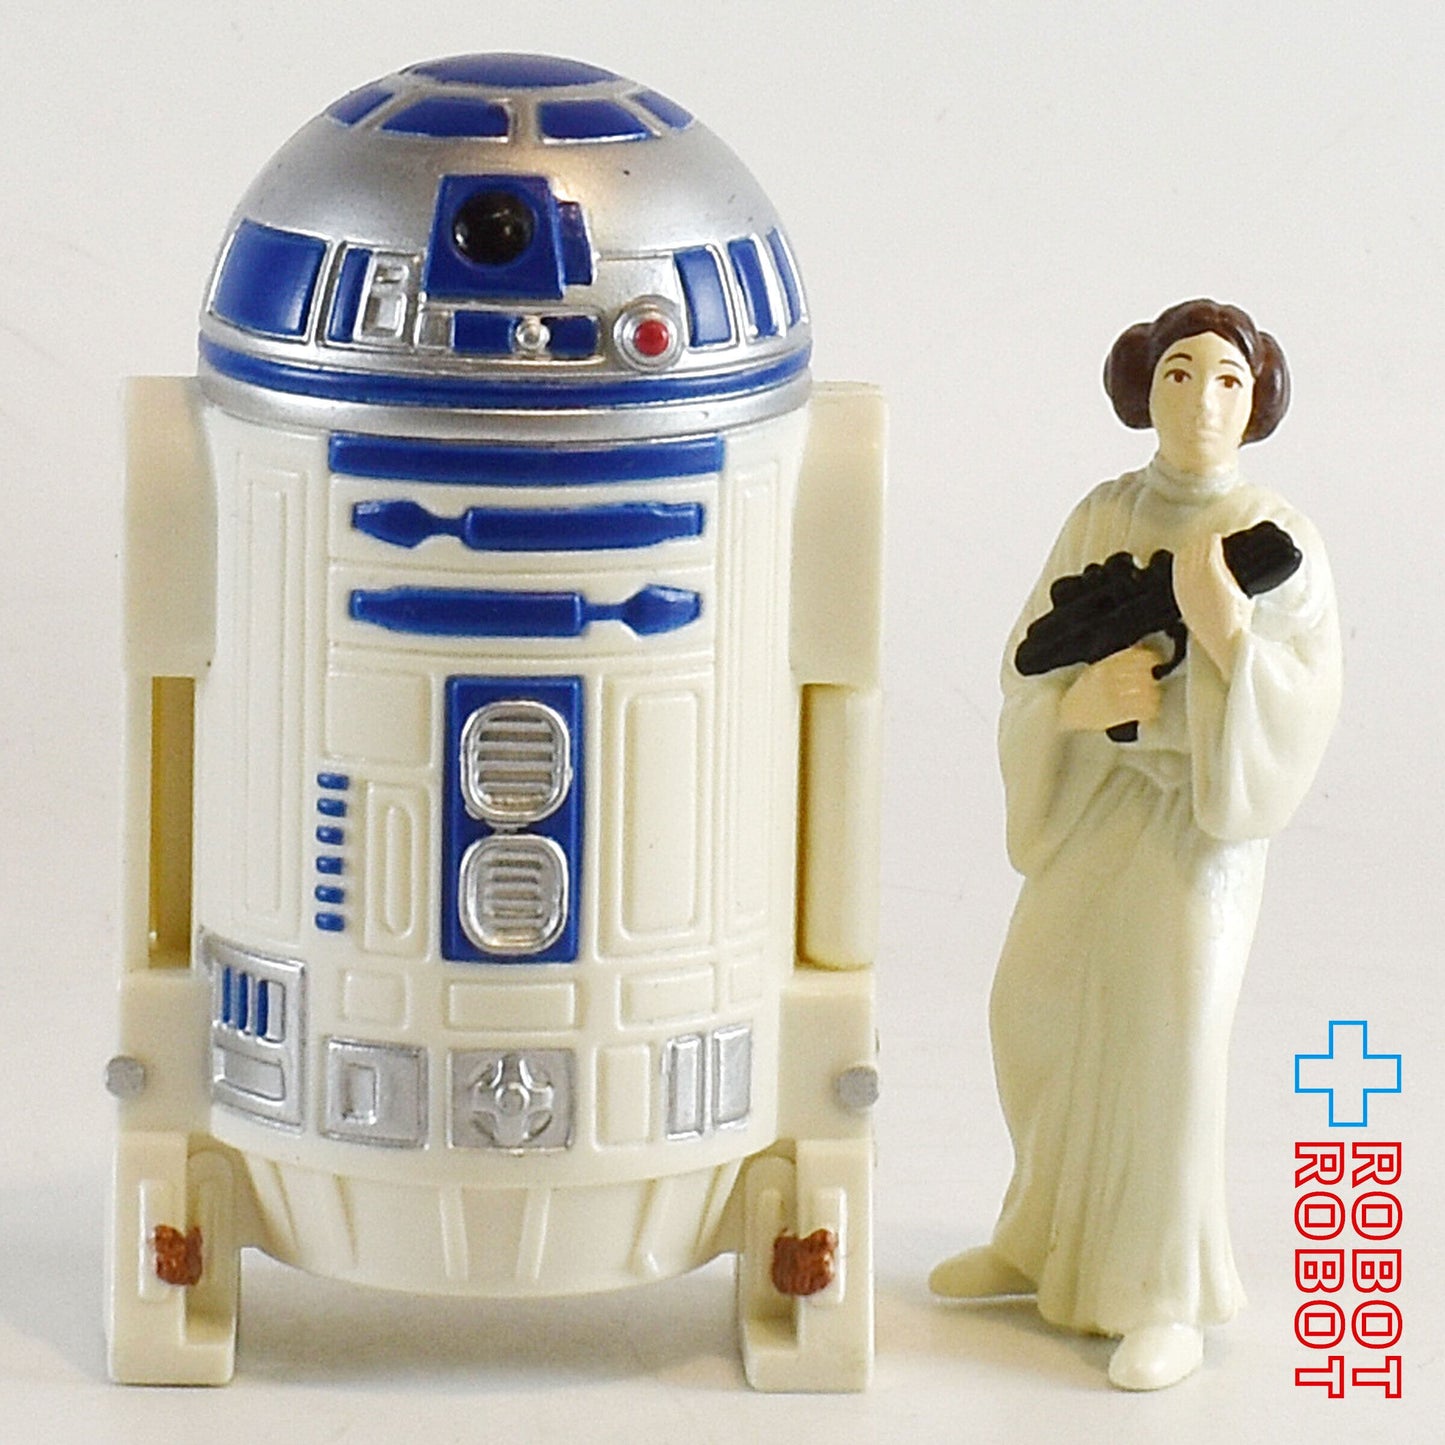 スター・ウォーズ R2-D2 & プリンセス・レイア ミニフィギュア タコベル